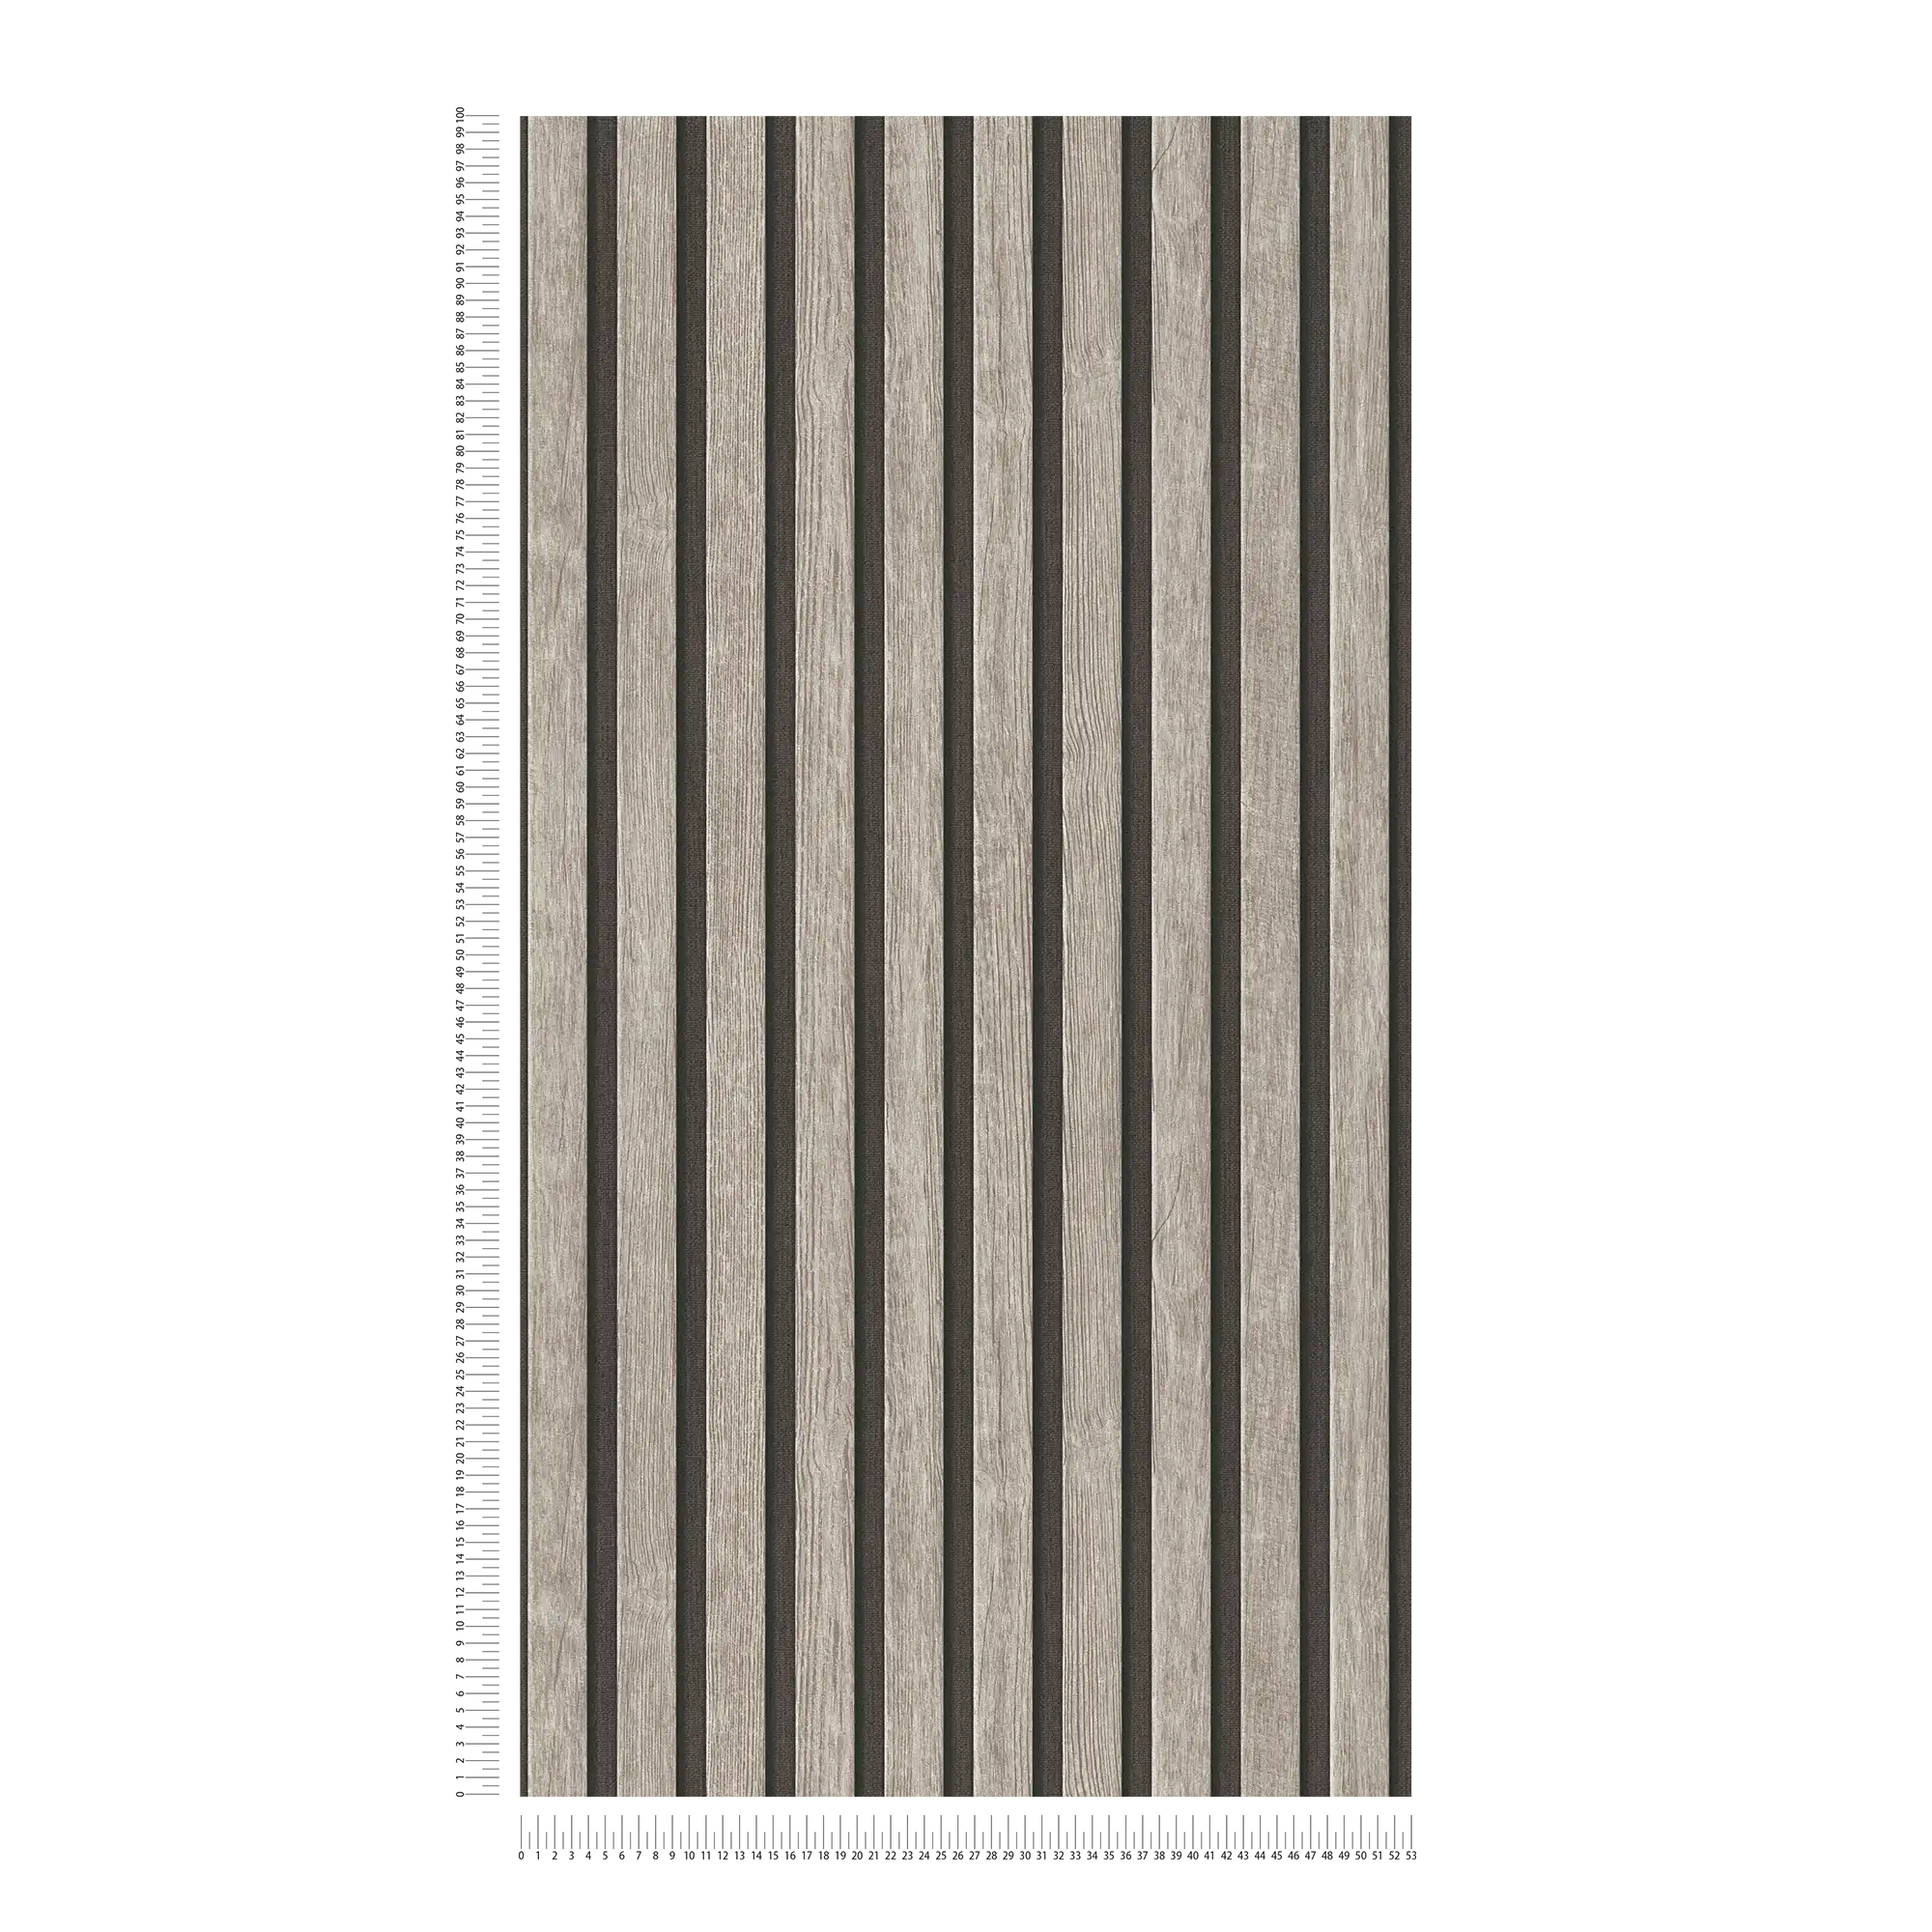             Houtpaneelbehang met fijne structuur - grijs, zwart
        